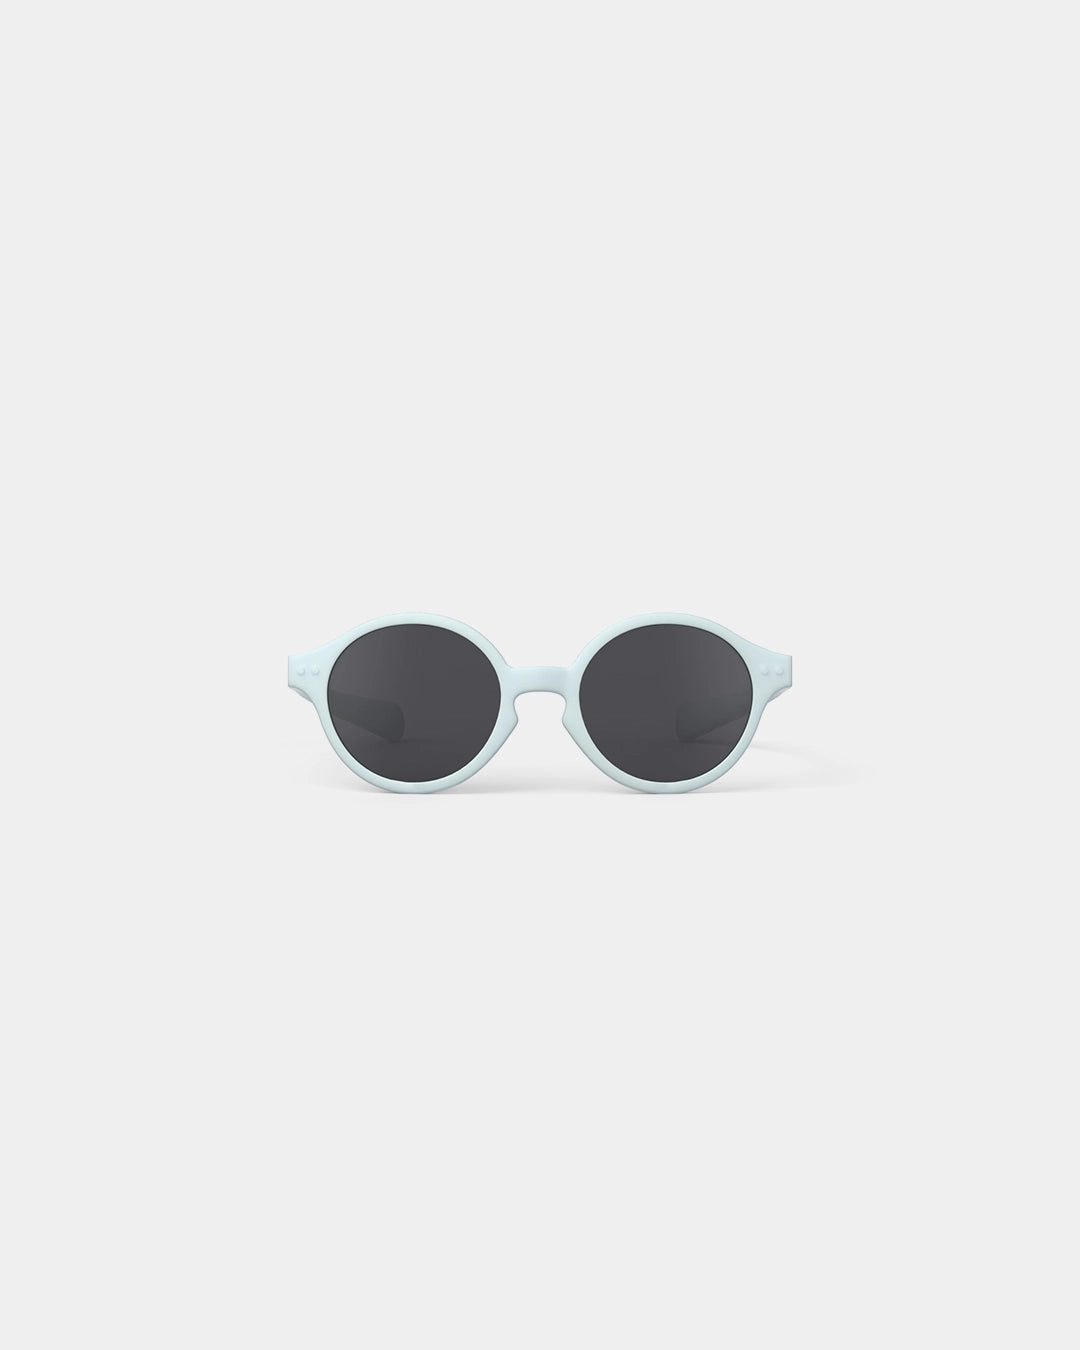 Diese süße Sonnenbrille für Mädchen von Izipizi wurde für alle Aktivitäten und Ausflüge bei sonnigem Wetter, im Sommer wie auch im Winter entwickelt. Sie schützt optimal mit einem 100% UV-Schutz der Kategorie 3, ohne einen unangenehmen Druck auf die Nase oder Ohren auszuüben. 